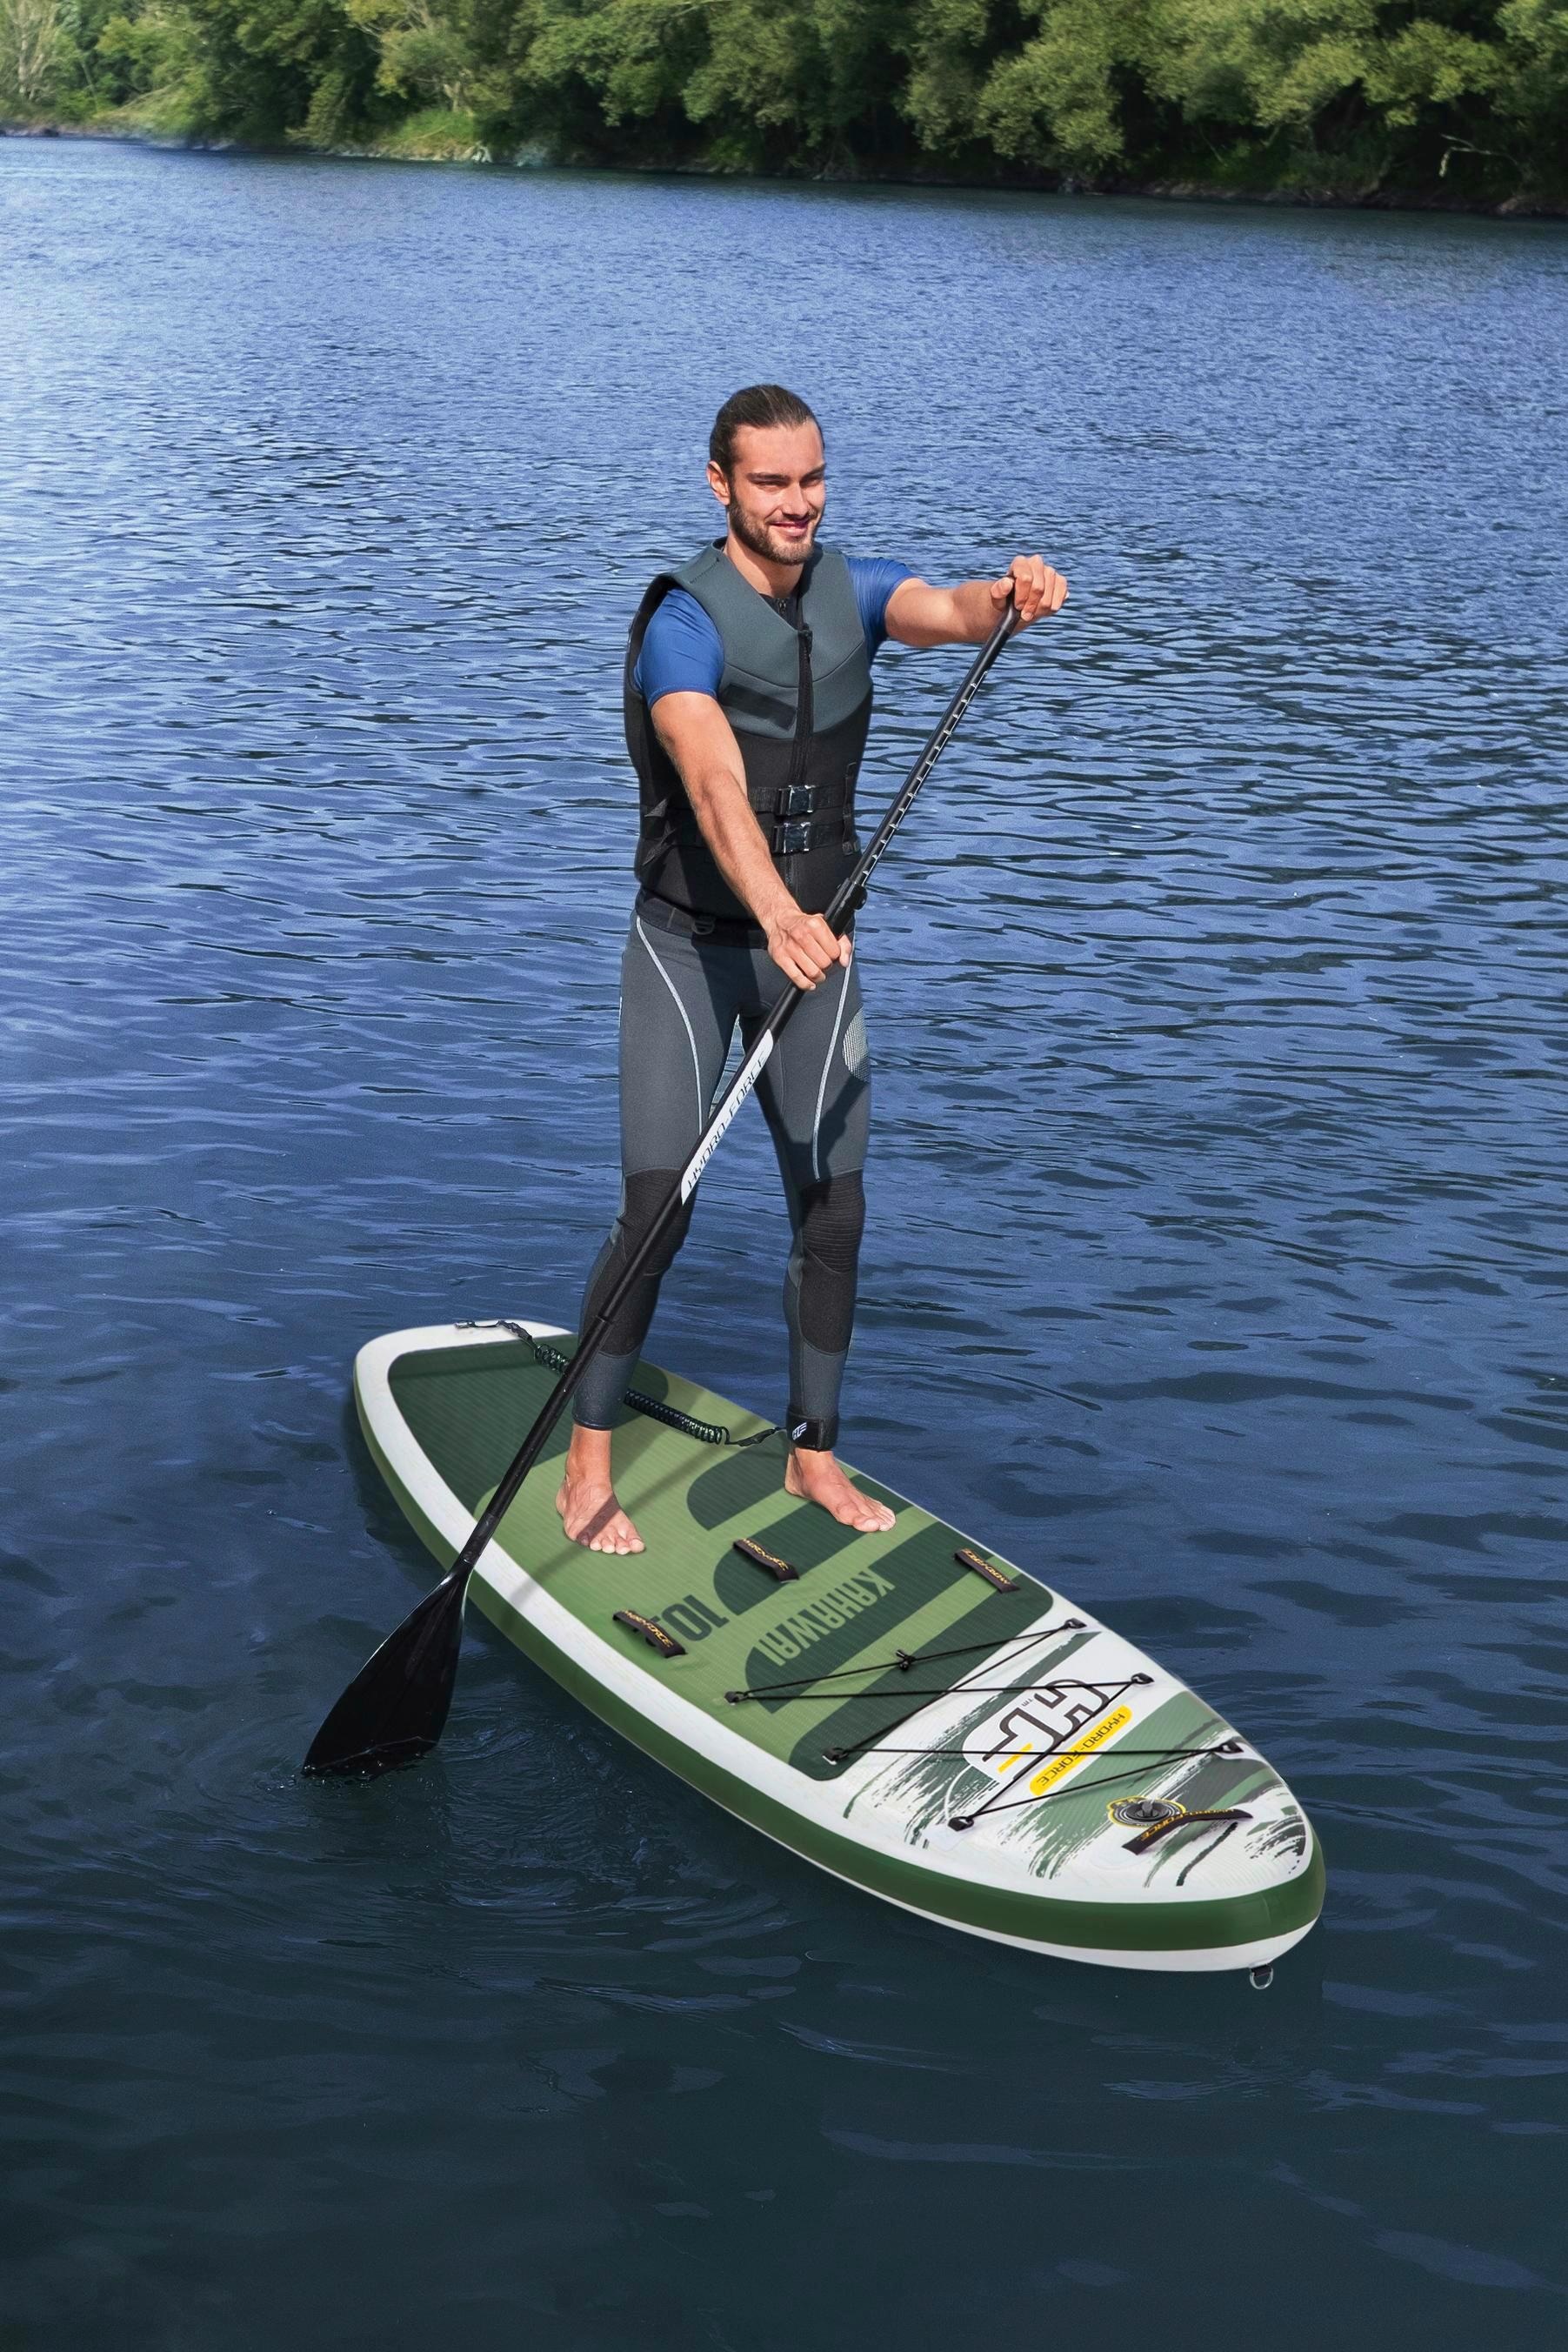 Stand Up Paddle Board Aufblasbar mit Pumpe Grün/Weiß - Weiß/Grün, MODERN, Kunststoff (310/86/15cm) - Bestway